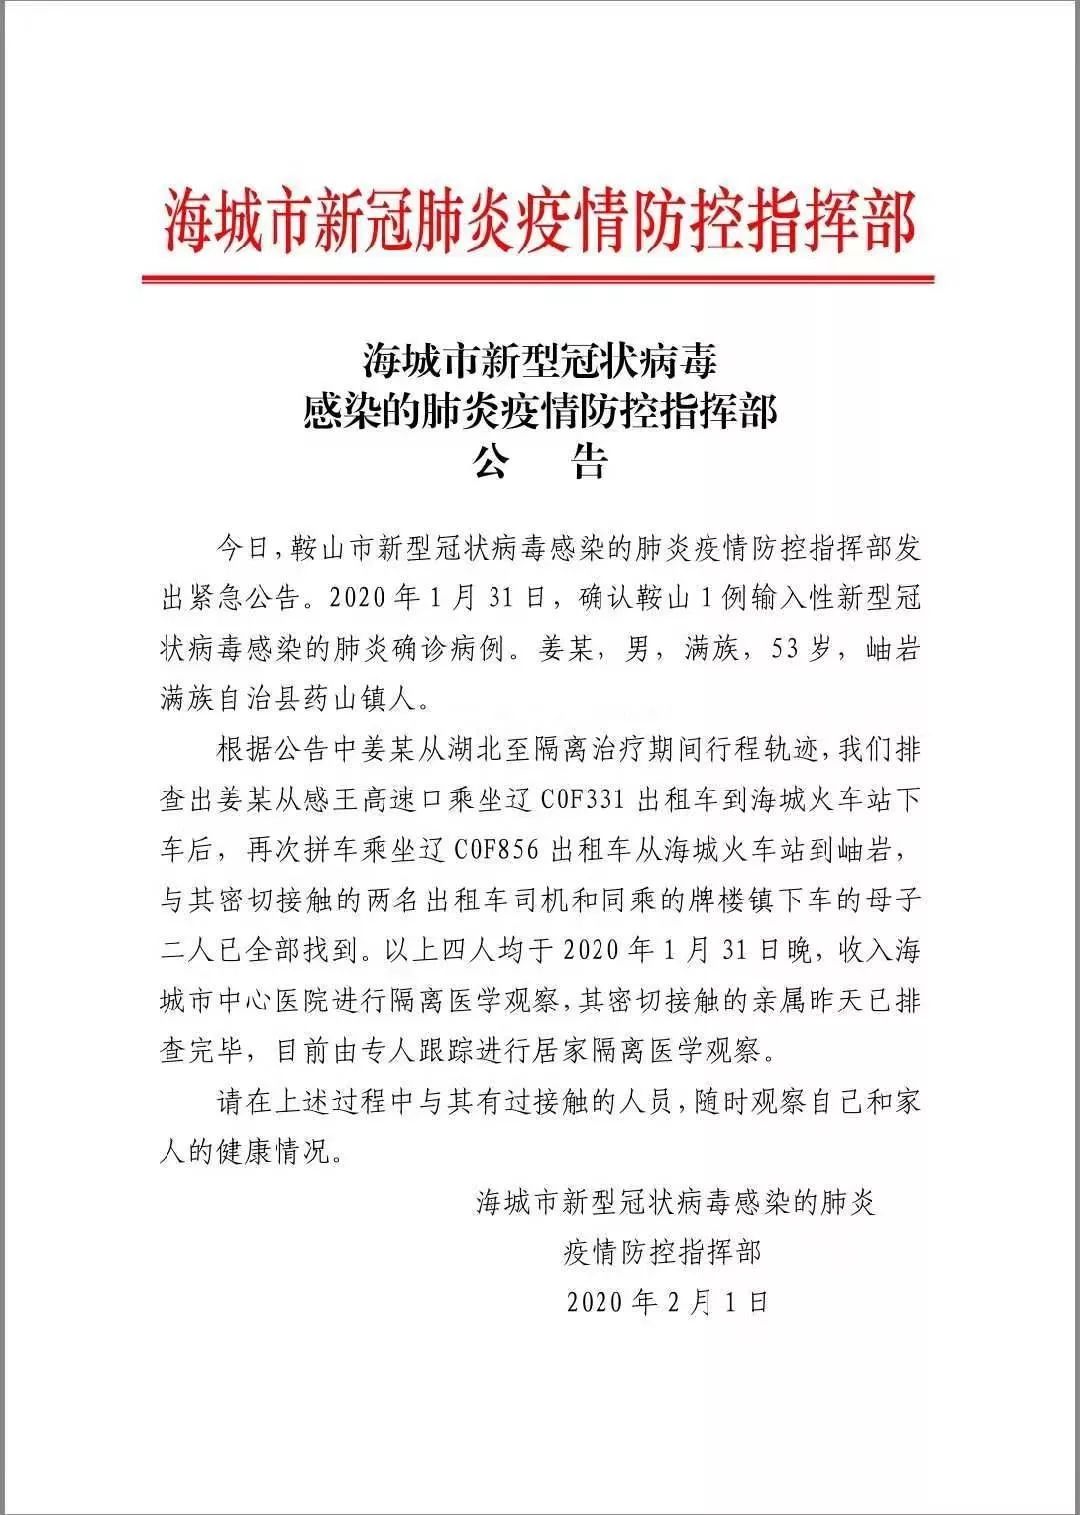 2月1日,鞍山市新型冠状病毒感染的肺炎疫情防控指挥部发出紧急公告.